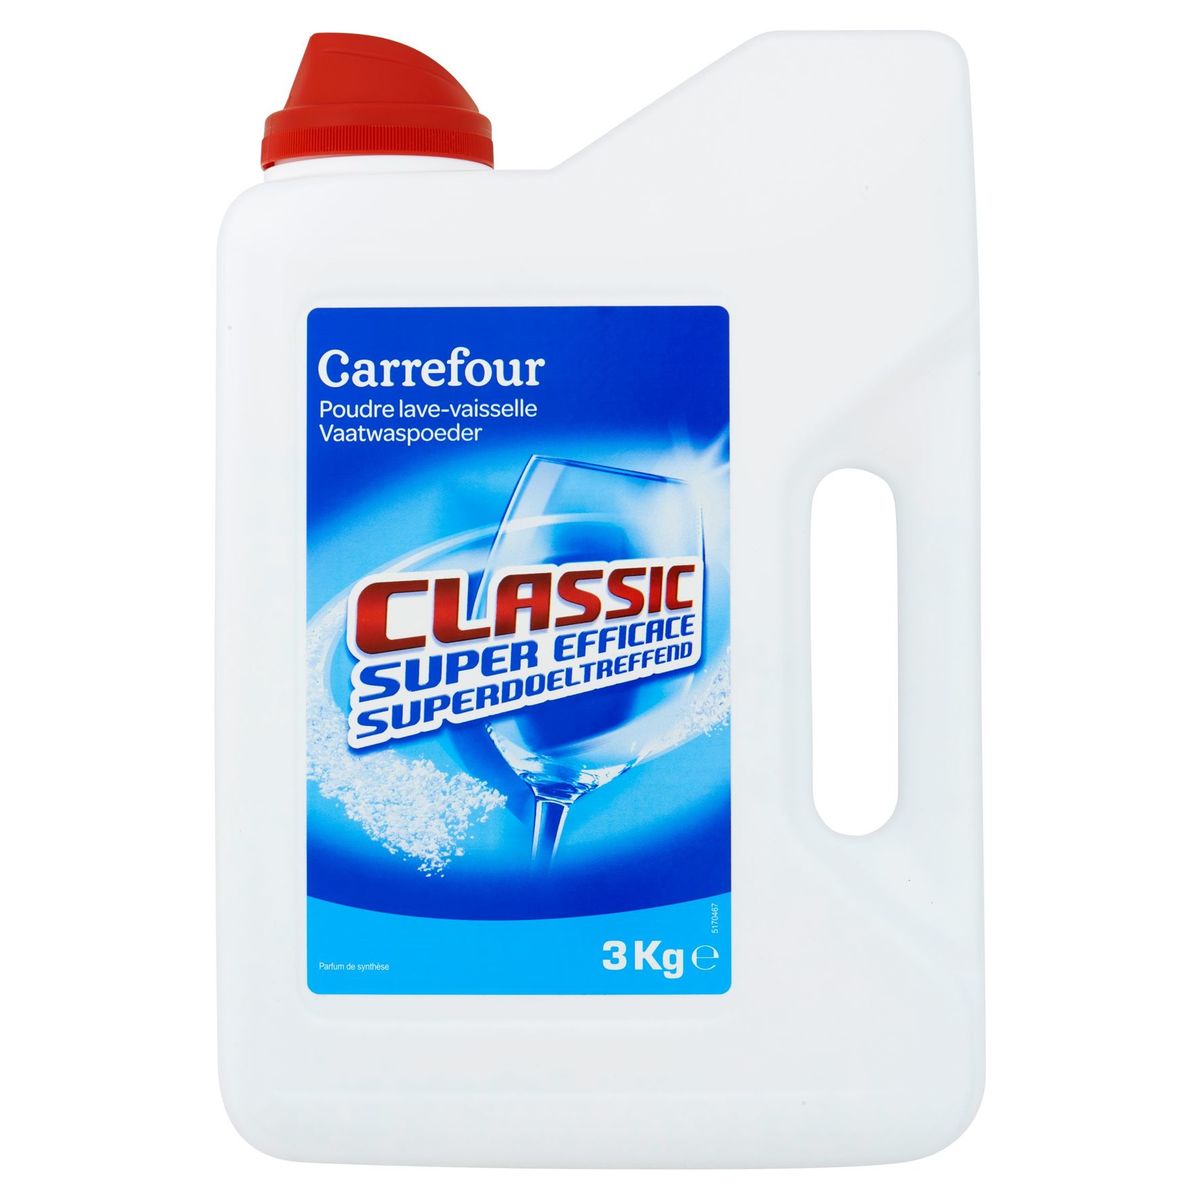 Carrefour Poudre Lave-Vaisselle Classic 3 kg